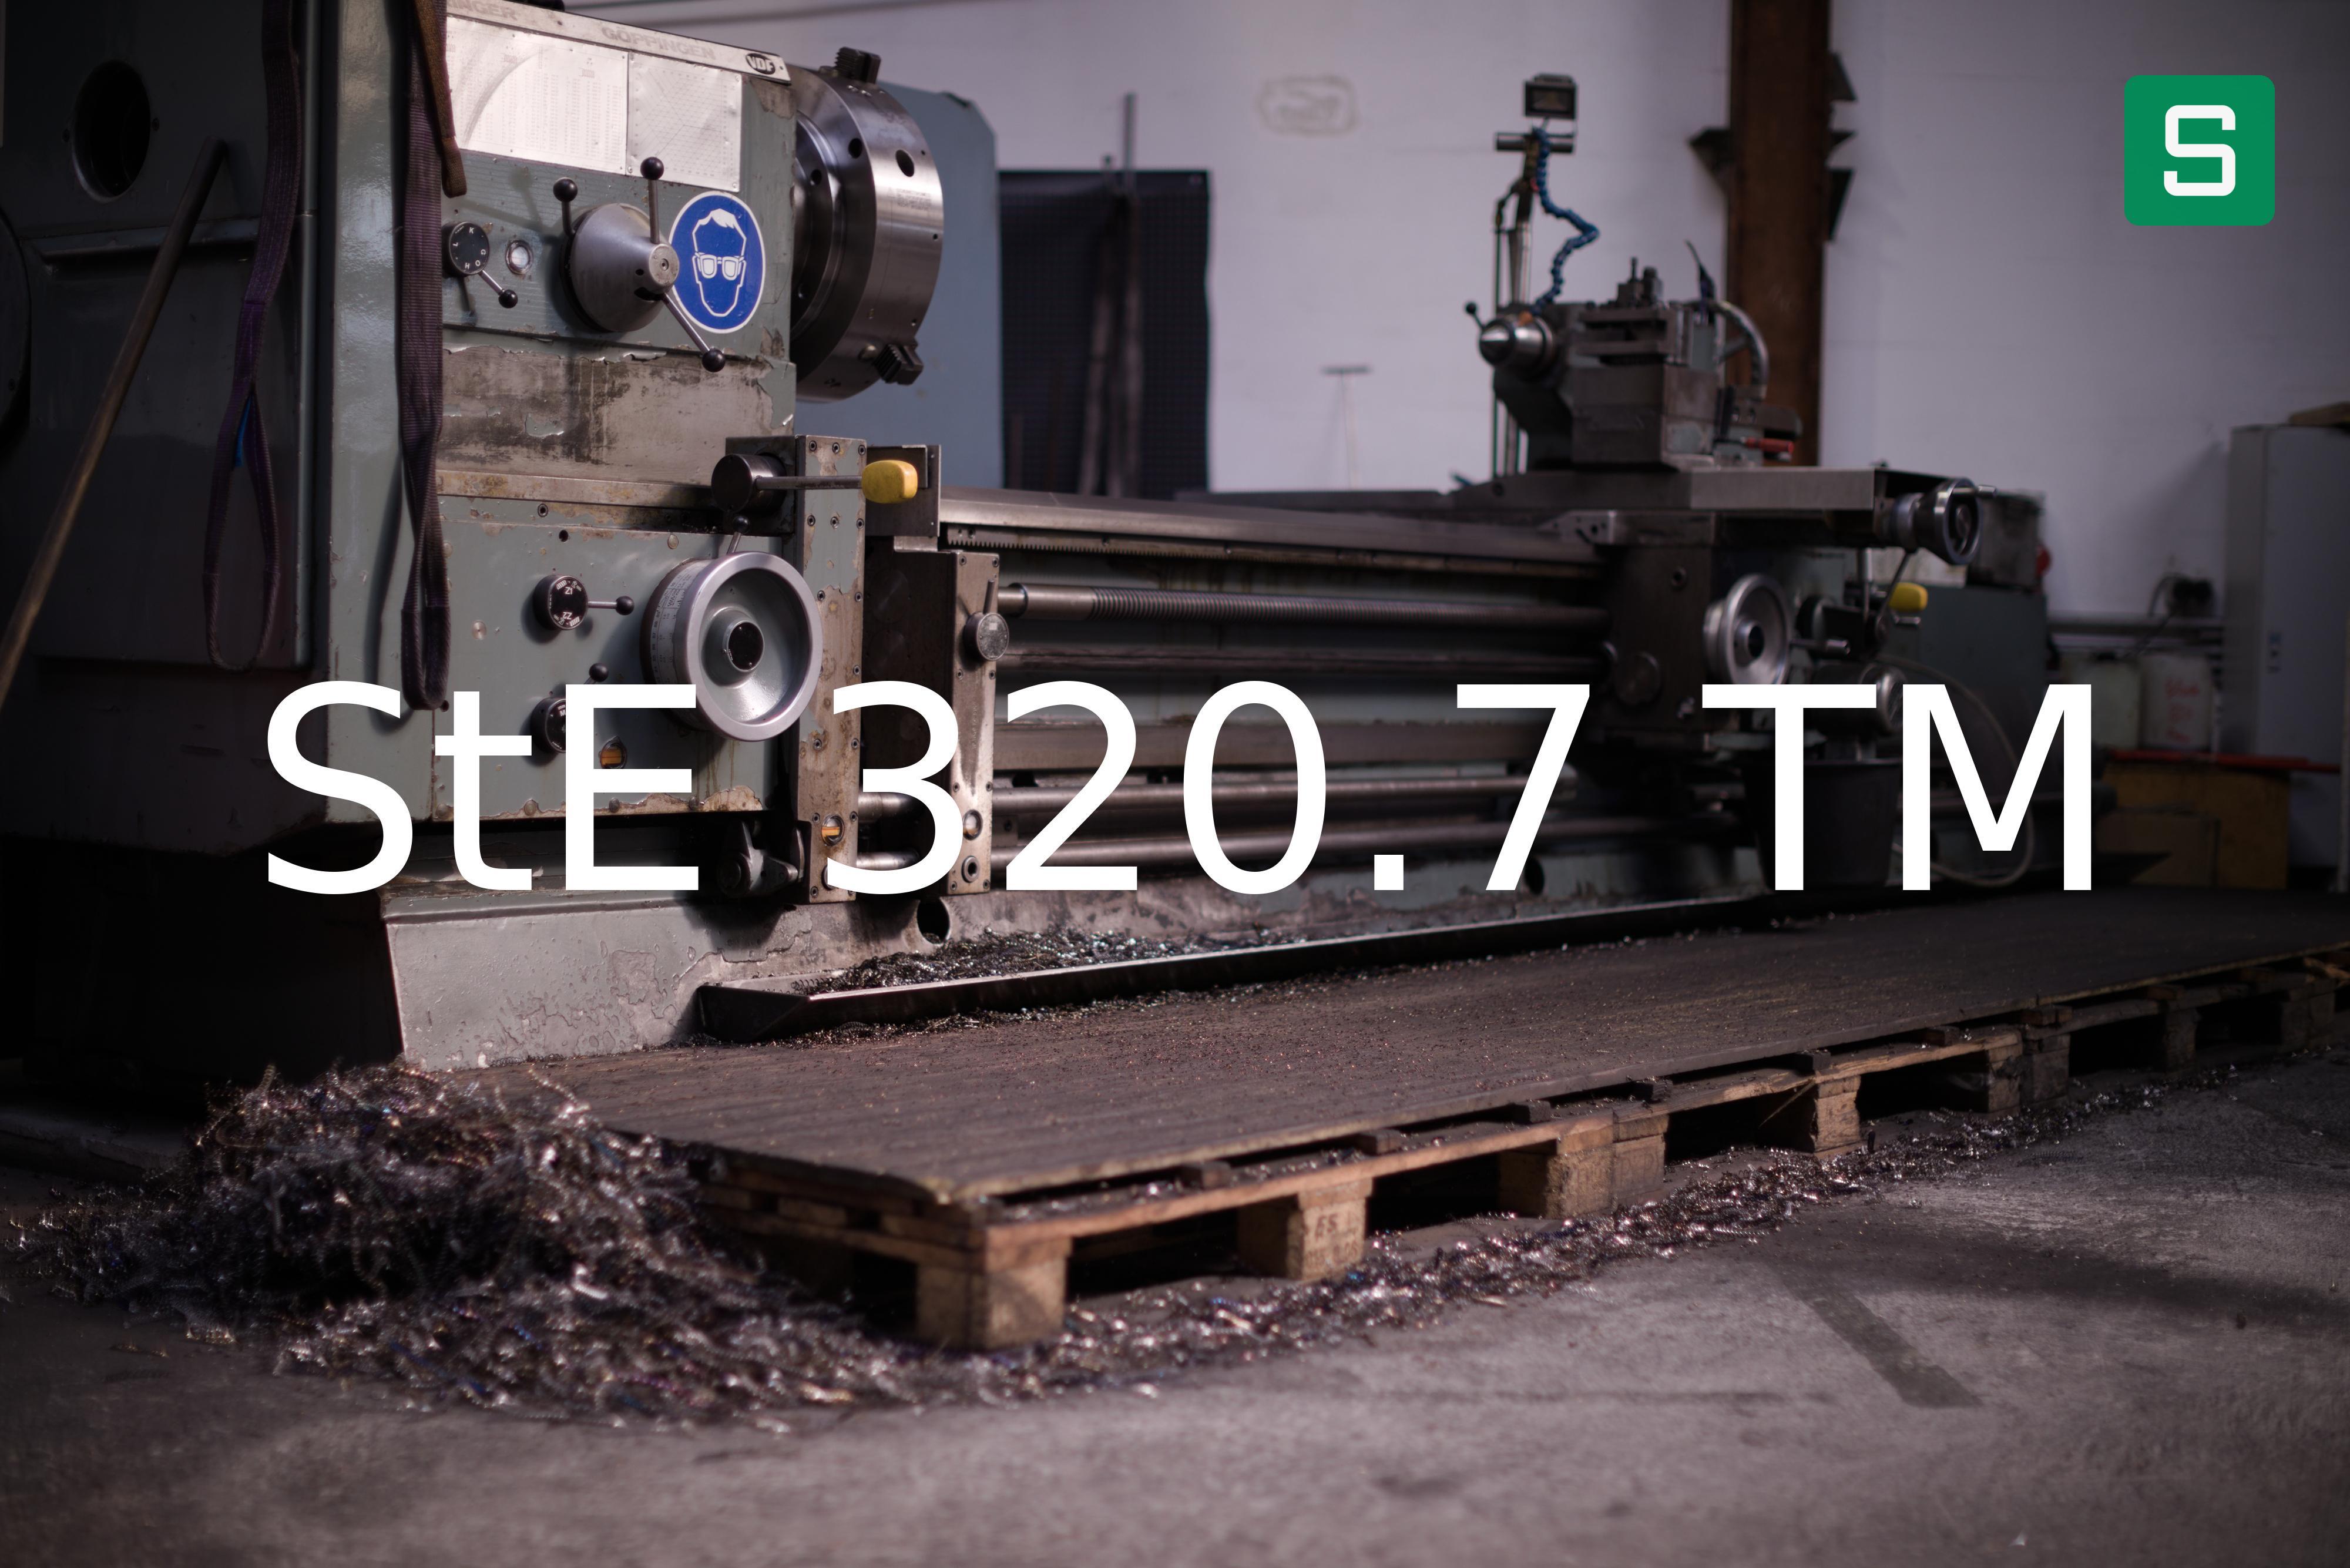 Steel Material: StE 320.7 TM